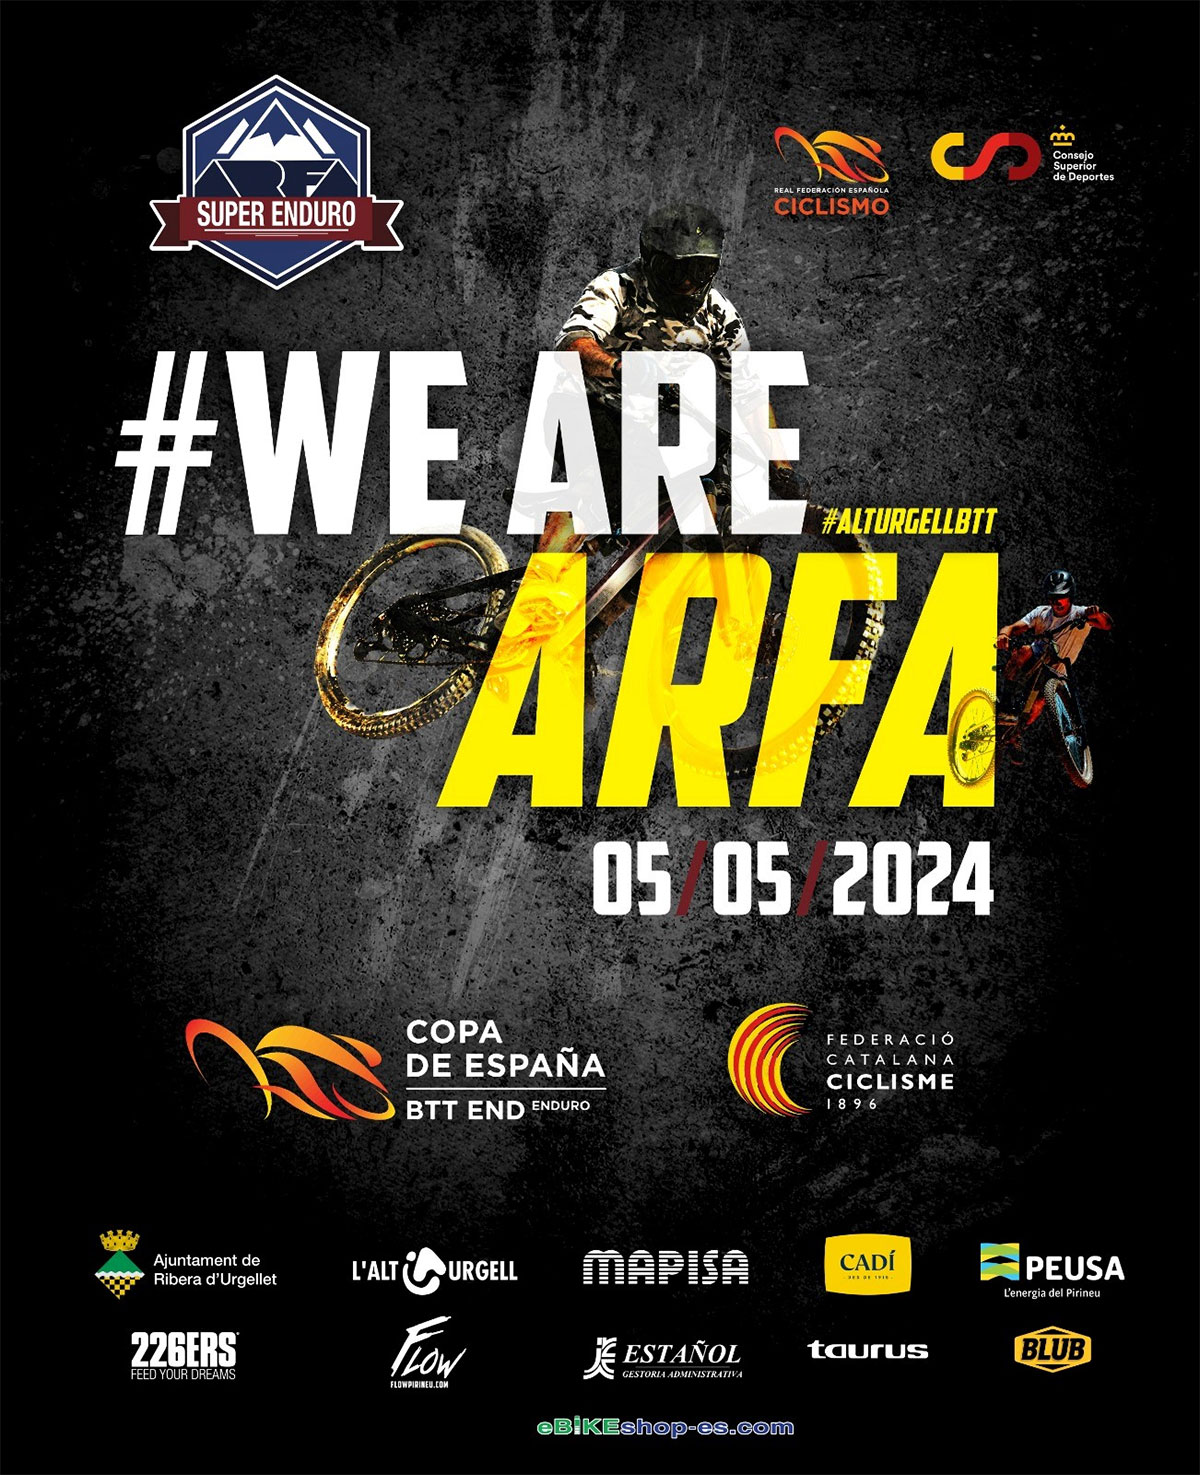 La Copa de España de Enduro 2024 encara su recta final con la disputa del 12A Súper Enduro Arfa